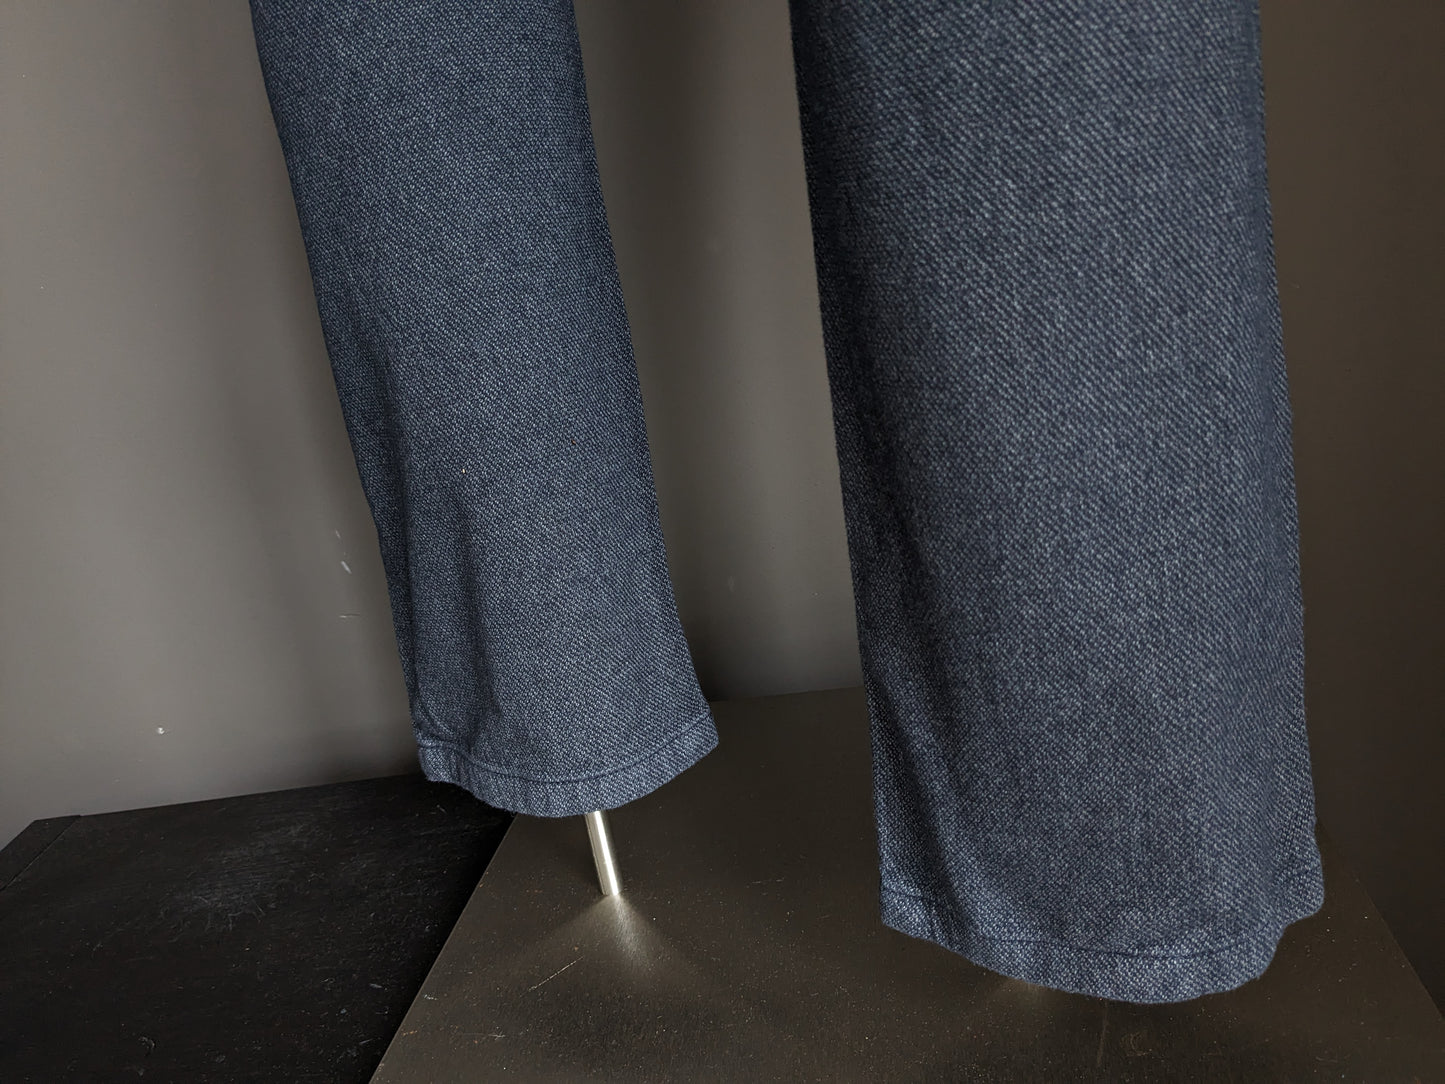 Pantalon / pantalon du jardin. Gris bleu mélangé. Ajustement moderne. Taille 34 - L34.